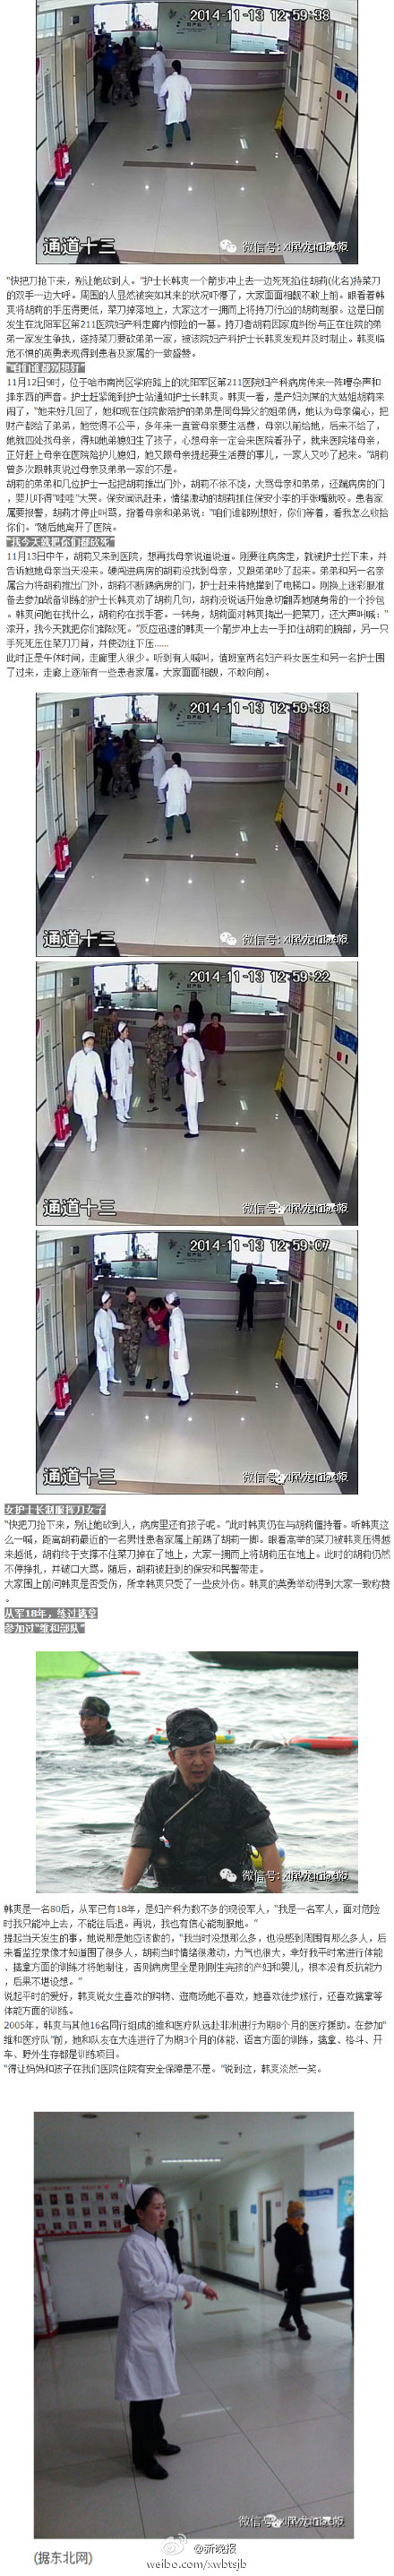 家属欲在医院砍死患者 女护士扣腕夺菜刀(图)